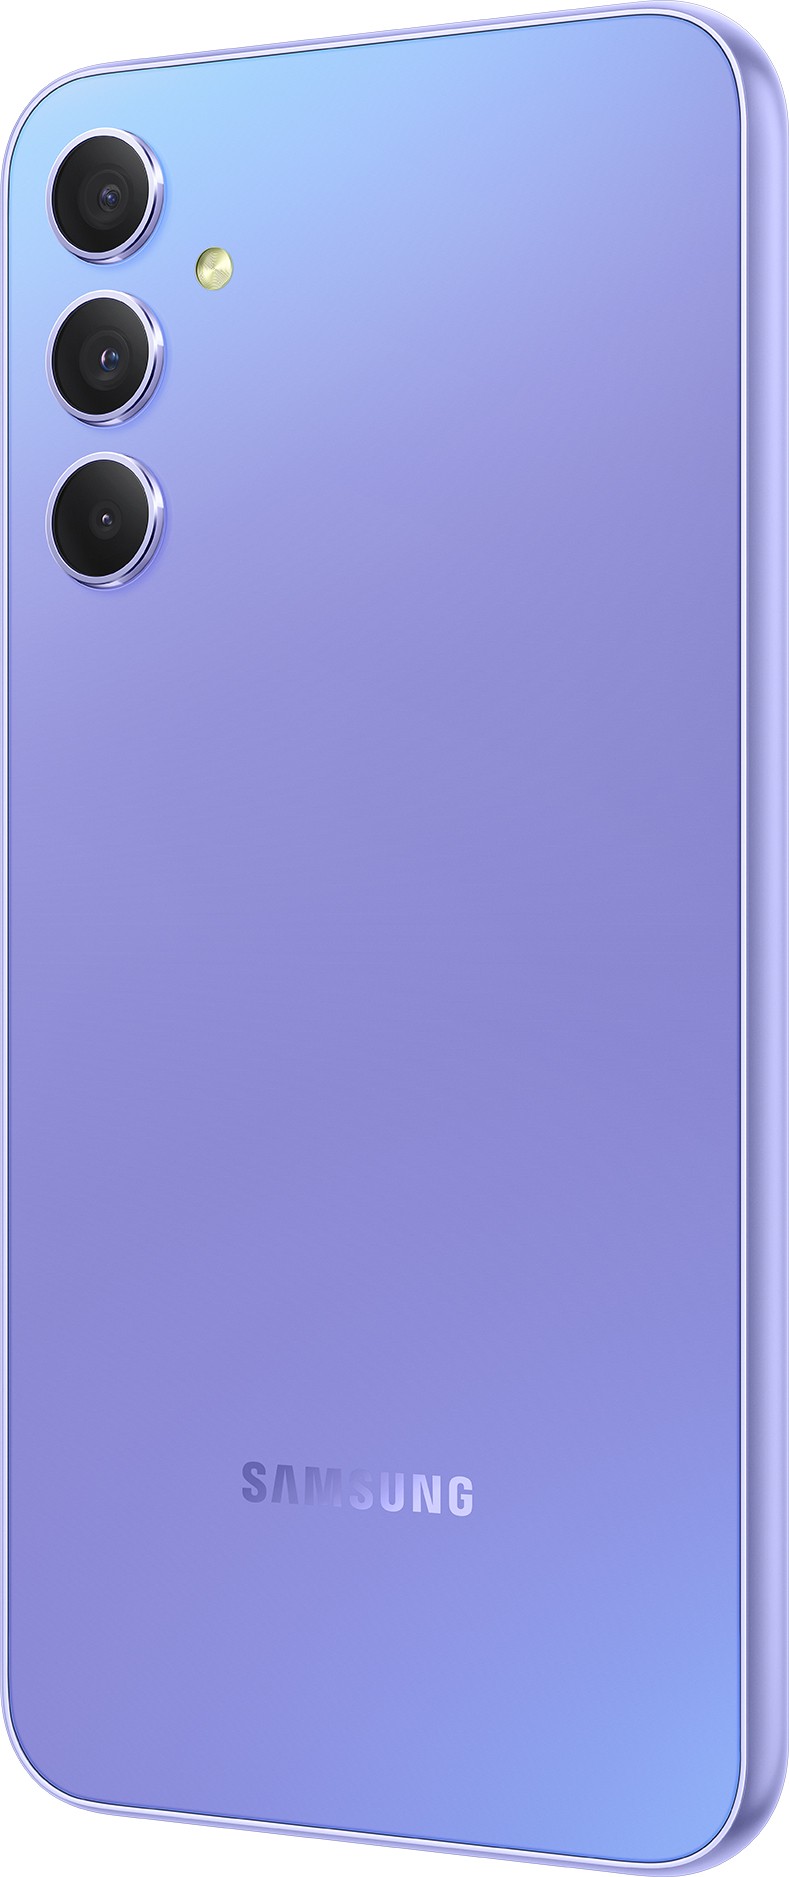 SAMSUNG Smartphone Galaxy A34 5G 128Go Lavande - GALAXY-A34-5G-128-VL